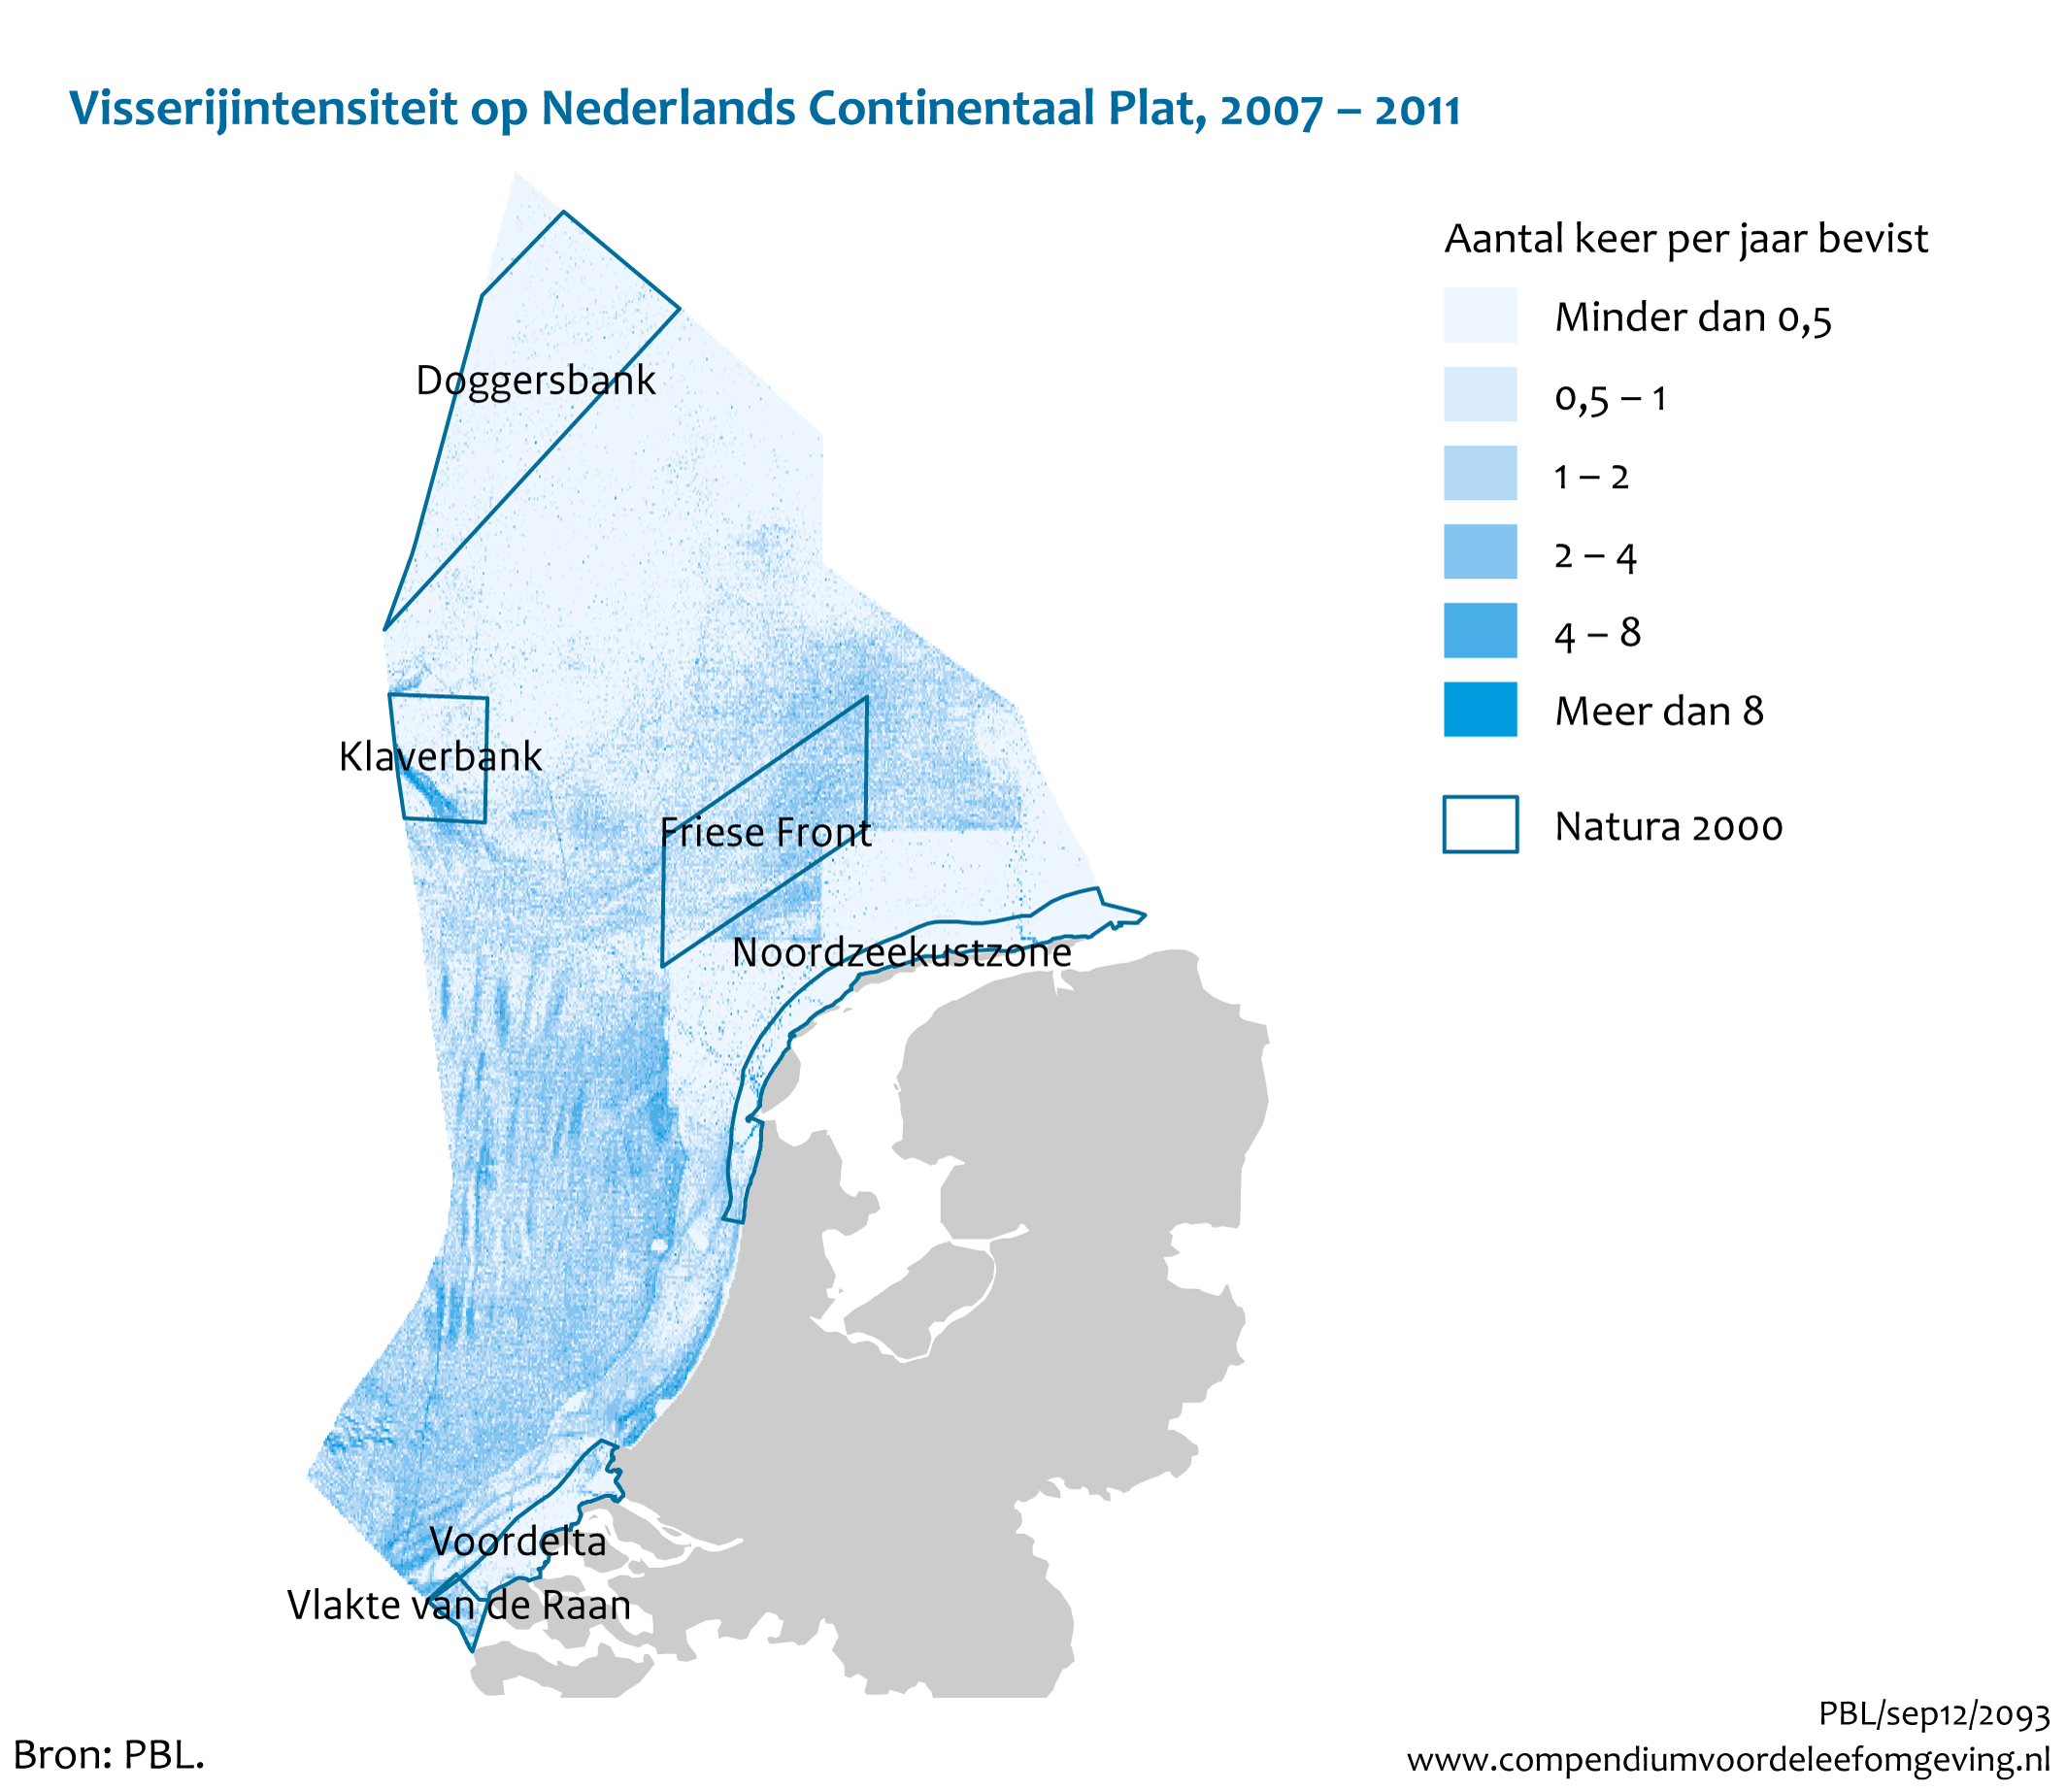 Figuur Visserijintensiteit op Nederlands Continentaal Plat, 2007-2011. In de rest van de tekst wordt deze figuur uitgebreider uitgelegd.